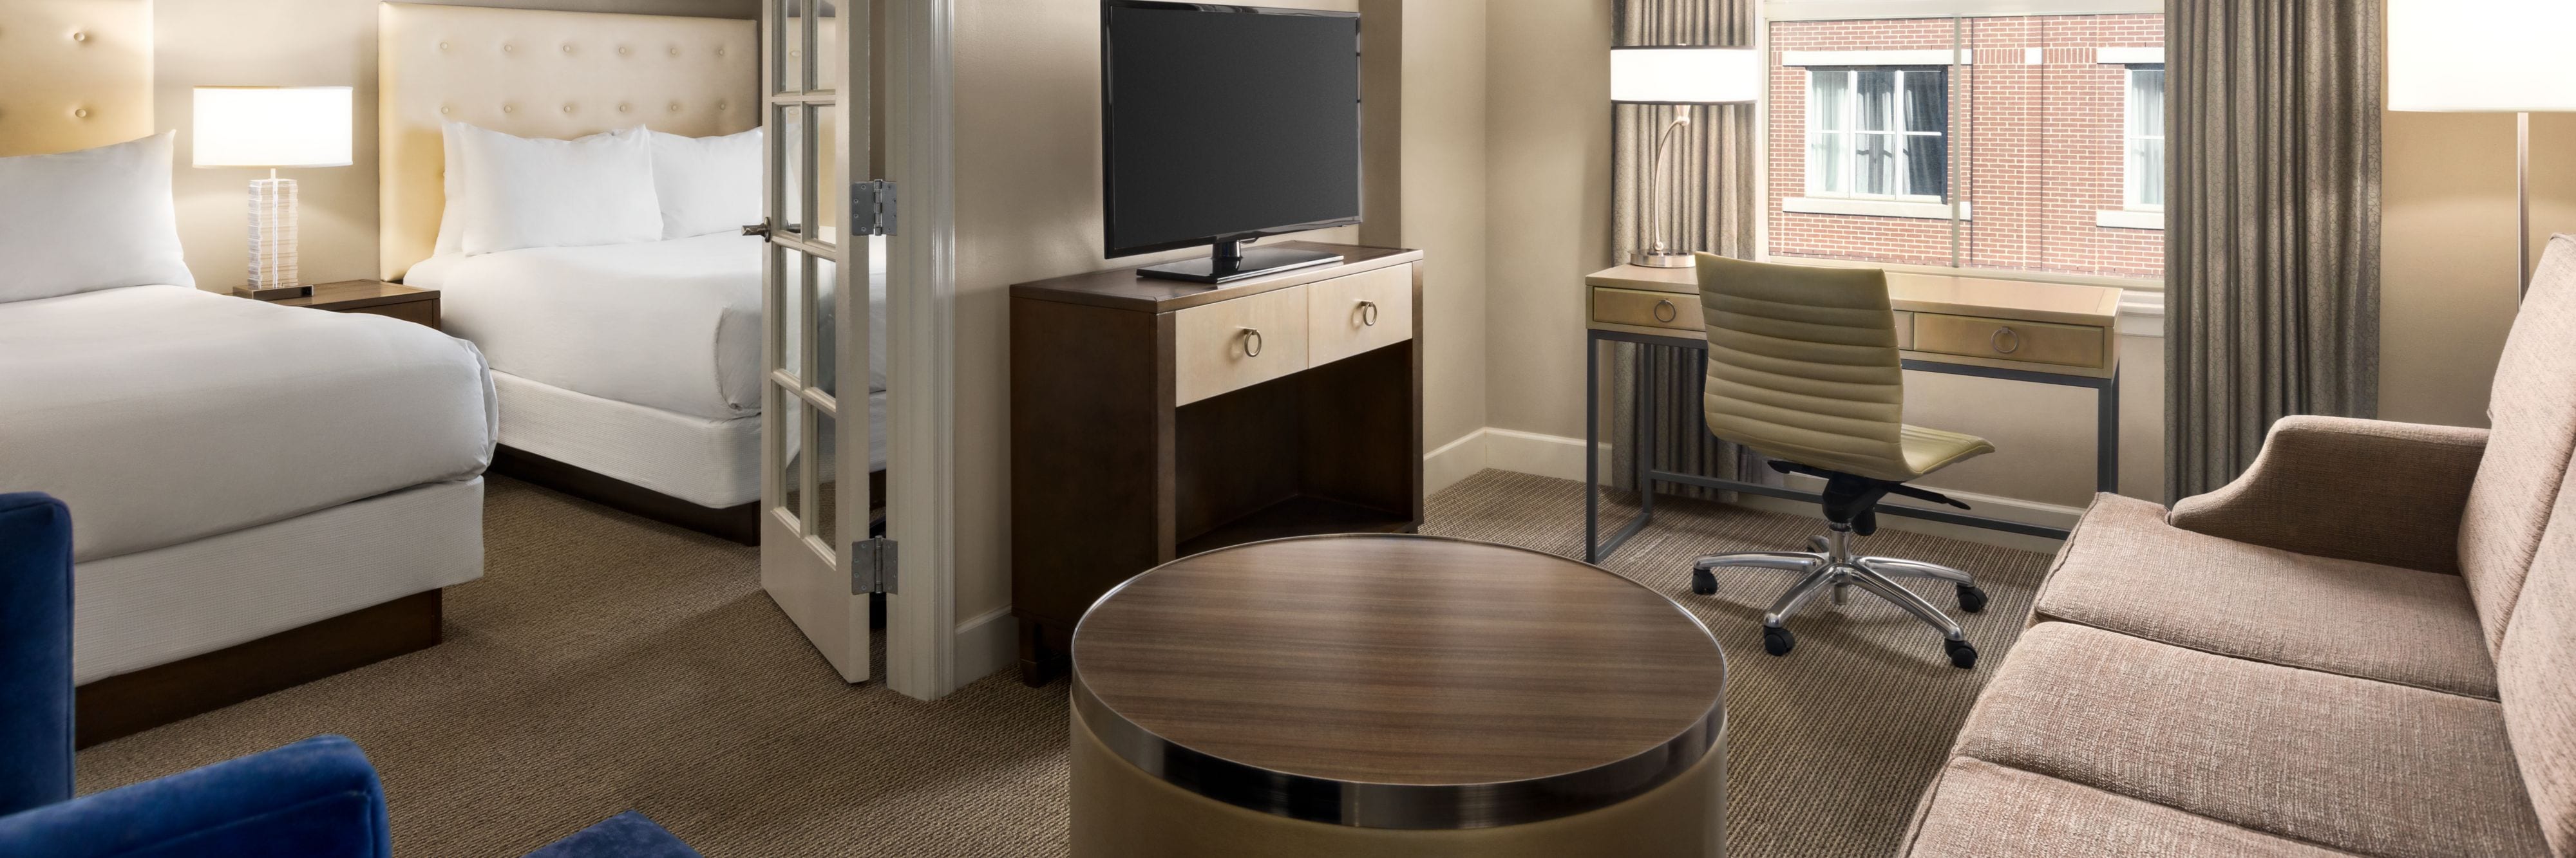 Magnolia Queen Suite - Living Room and Bedroom